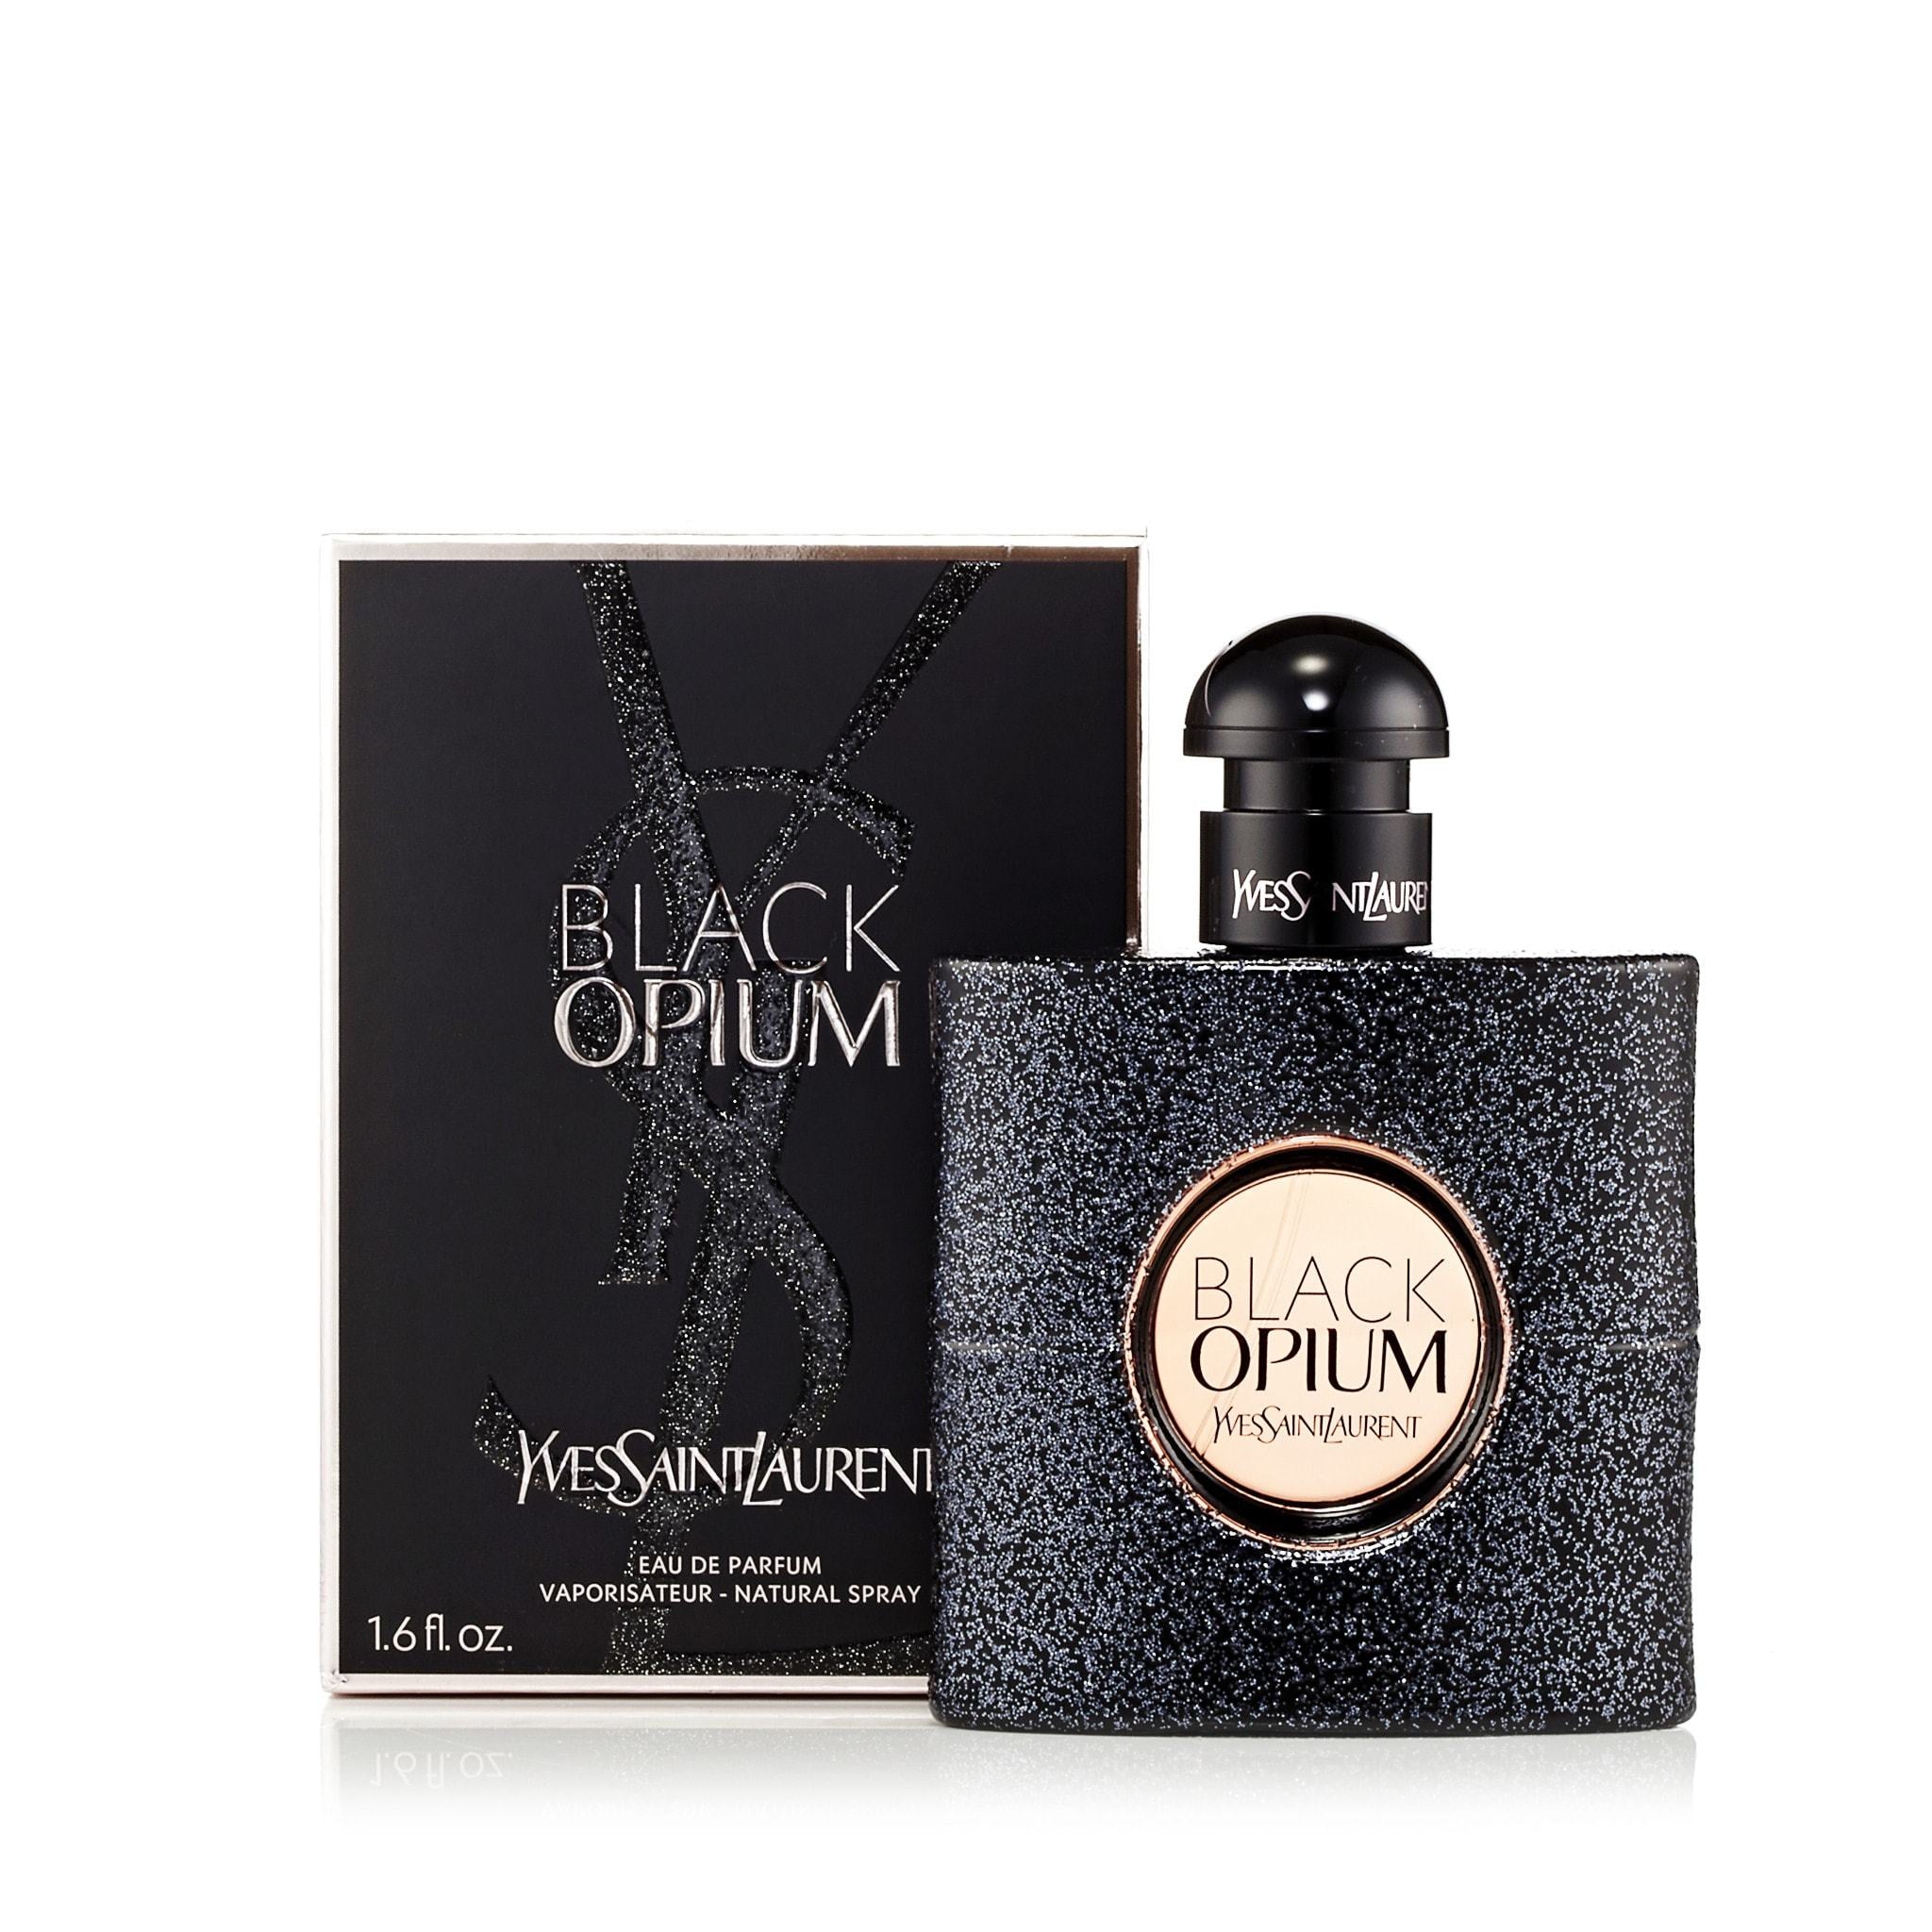 Black Opium Eau de Parfum Spray for Women by Yves Saint Laurent